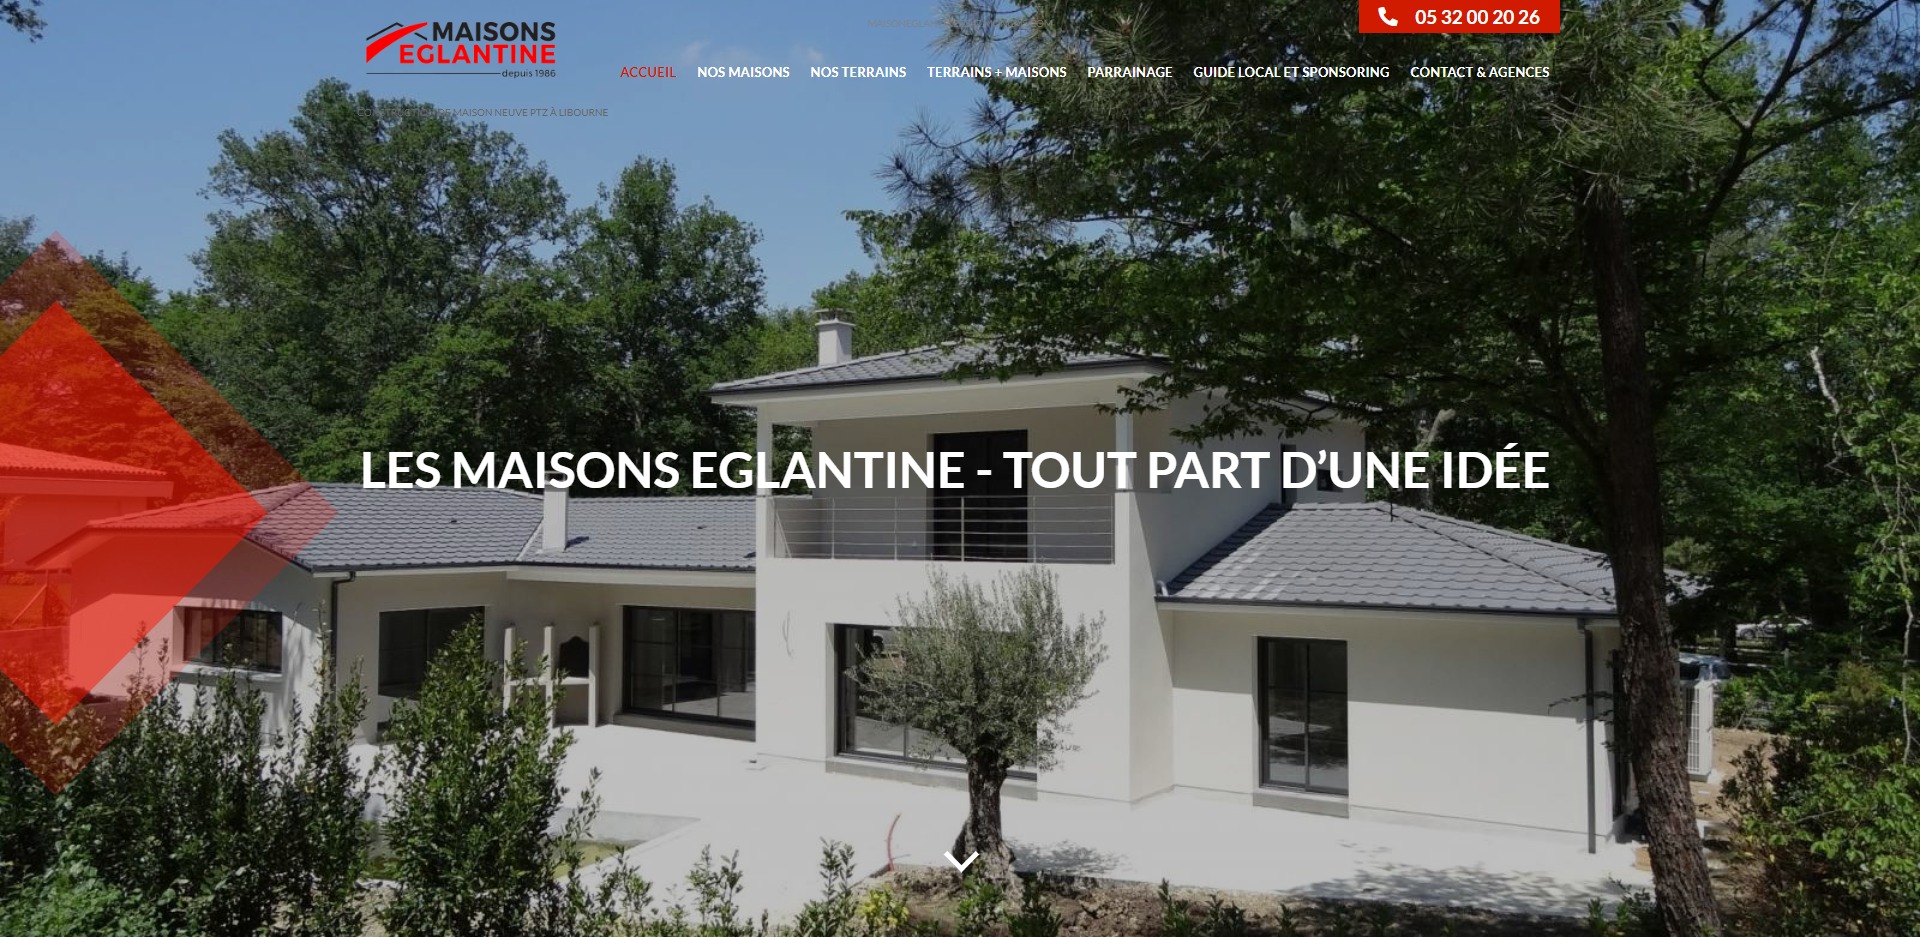 Constructeur de maisons individuelles et achat de terrain en Gironde - Maisons Églantine